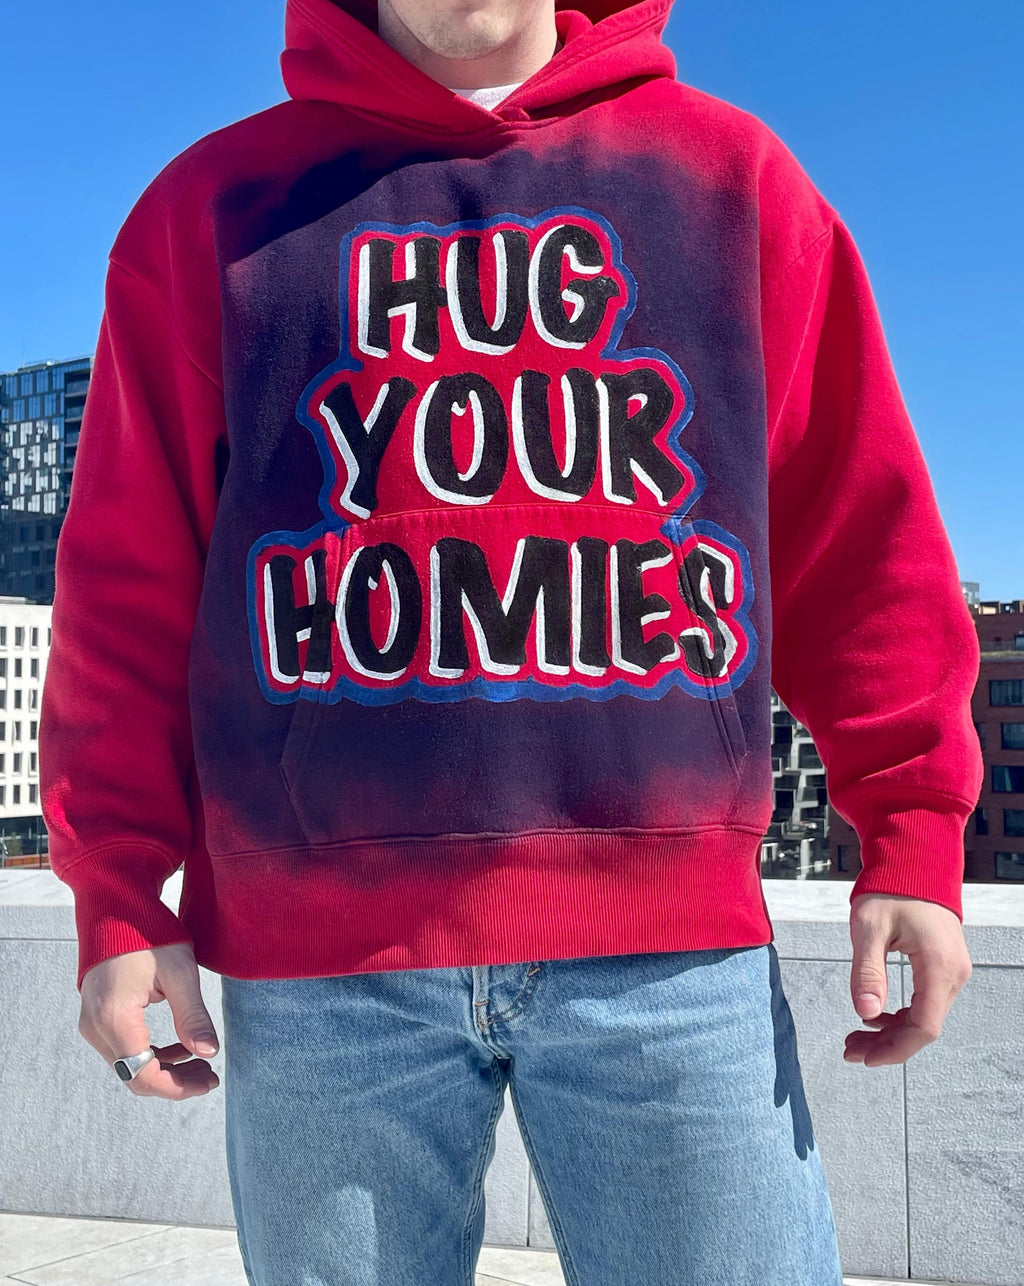 "HUG YOUR HOMIES" - Hoodie